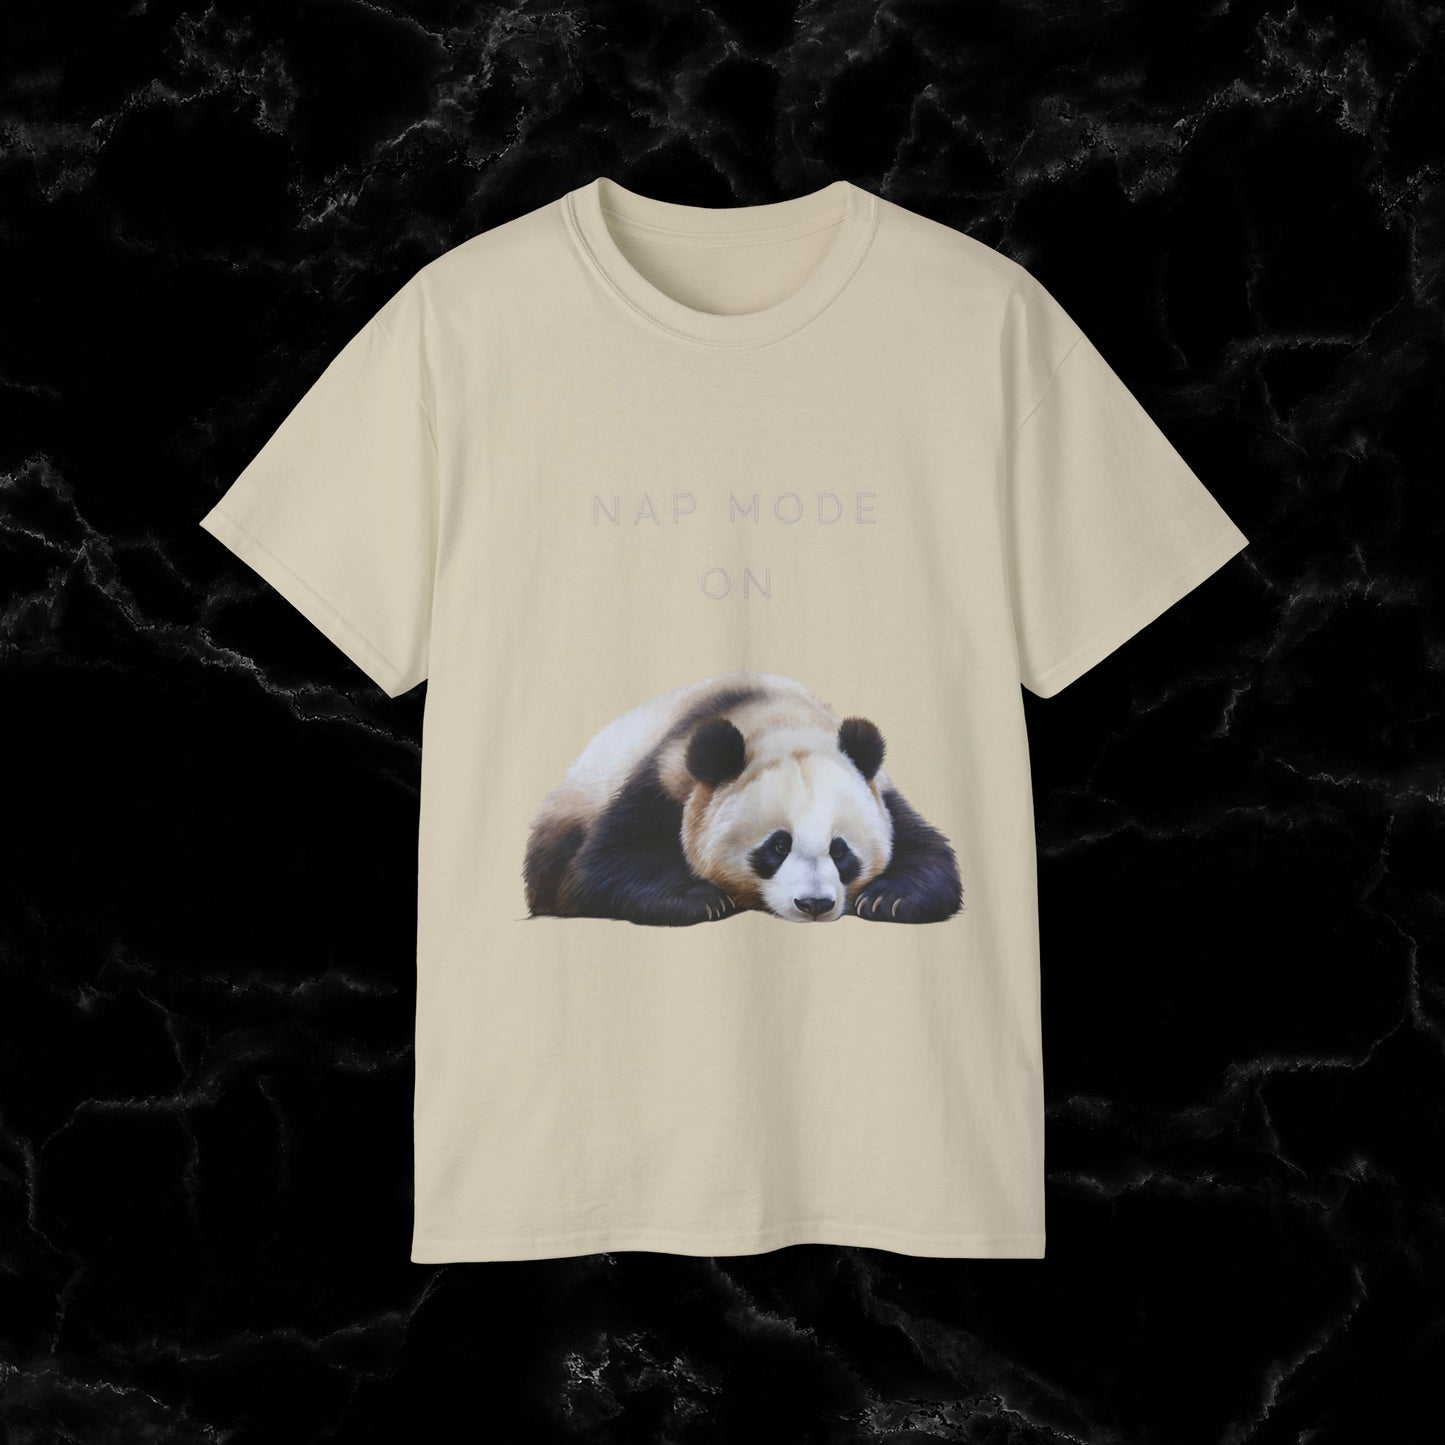 Nap Time Panda Unisex Funny Tee - Hilarious Panda Nap Design T-Shirt Sand M 